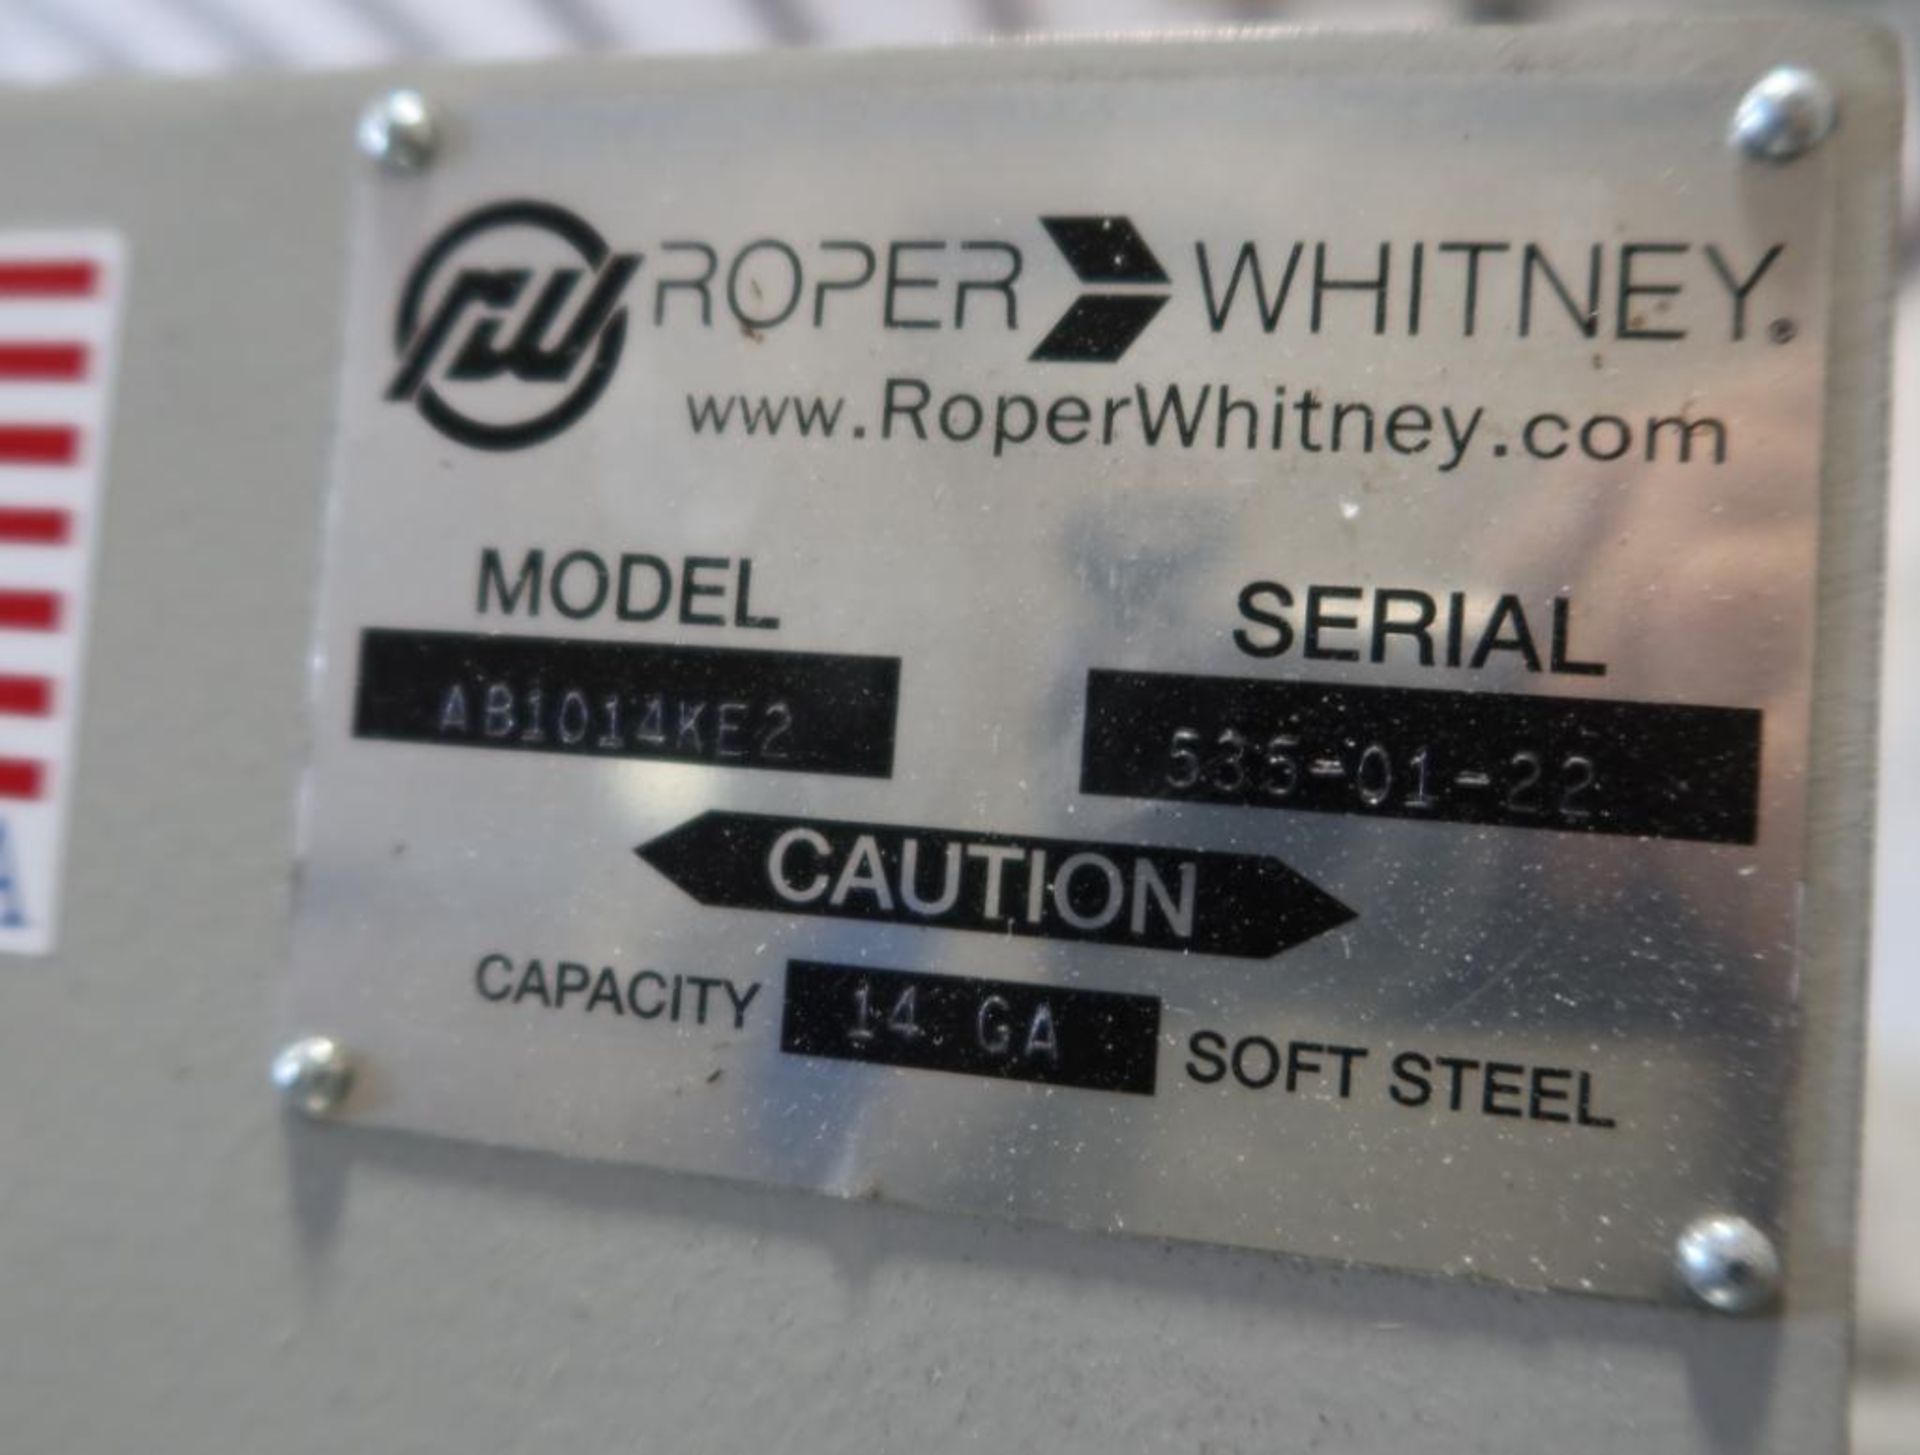 2022 Roper Whitney Autobrake AB1014KE2 CNC Folder w/Synergy Control, 40" Backgauge, 230V, 3 Phase, 6 - Image 9 of 9